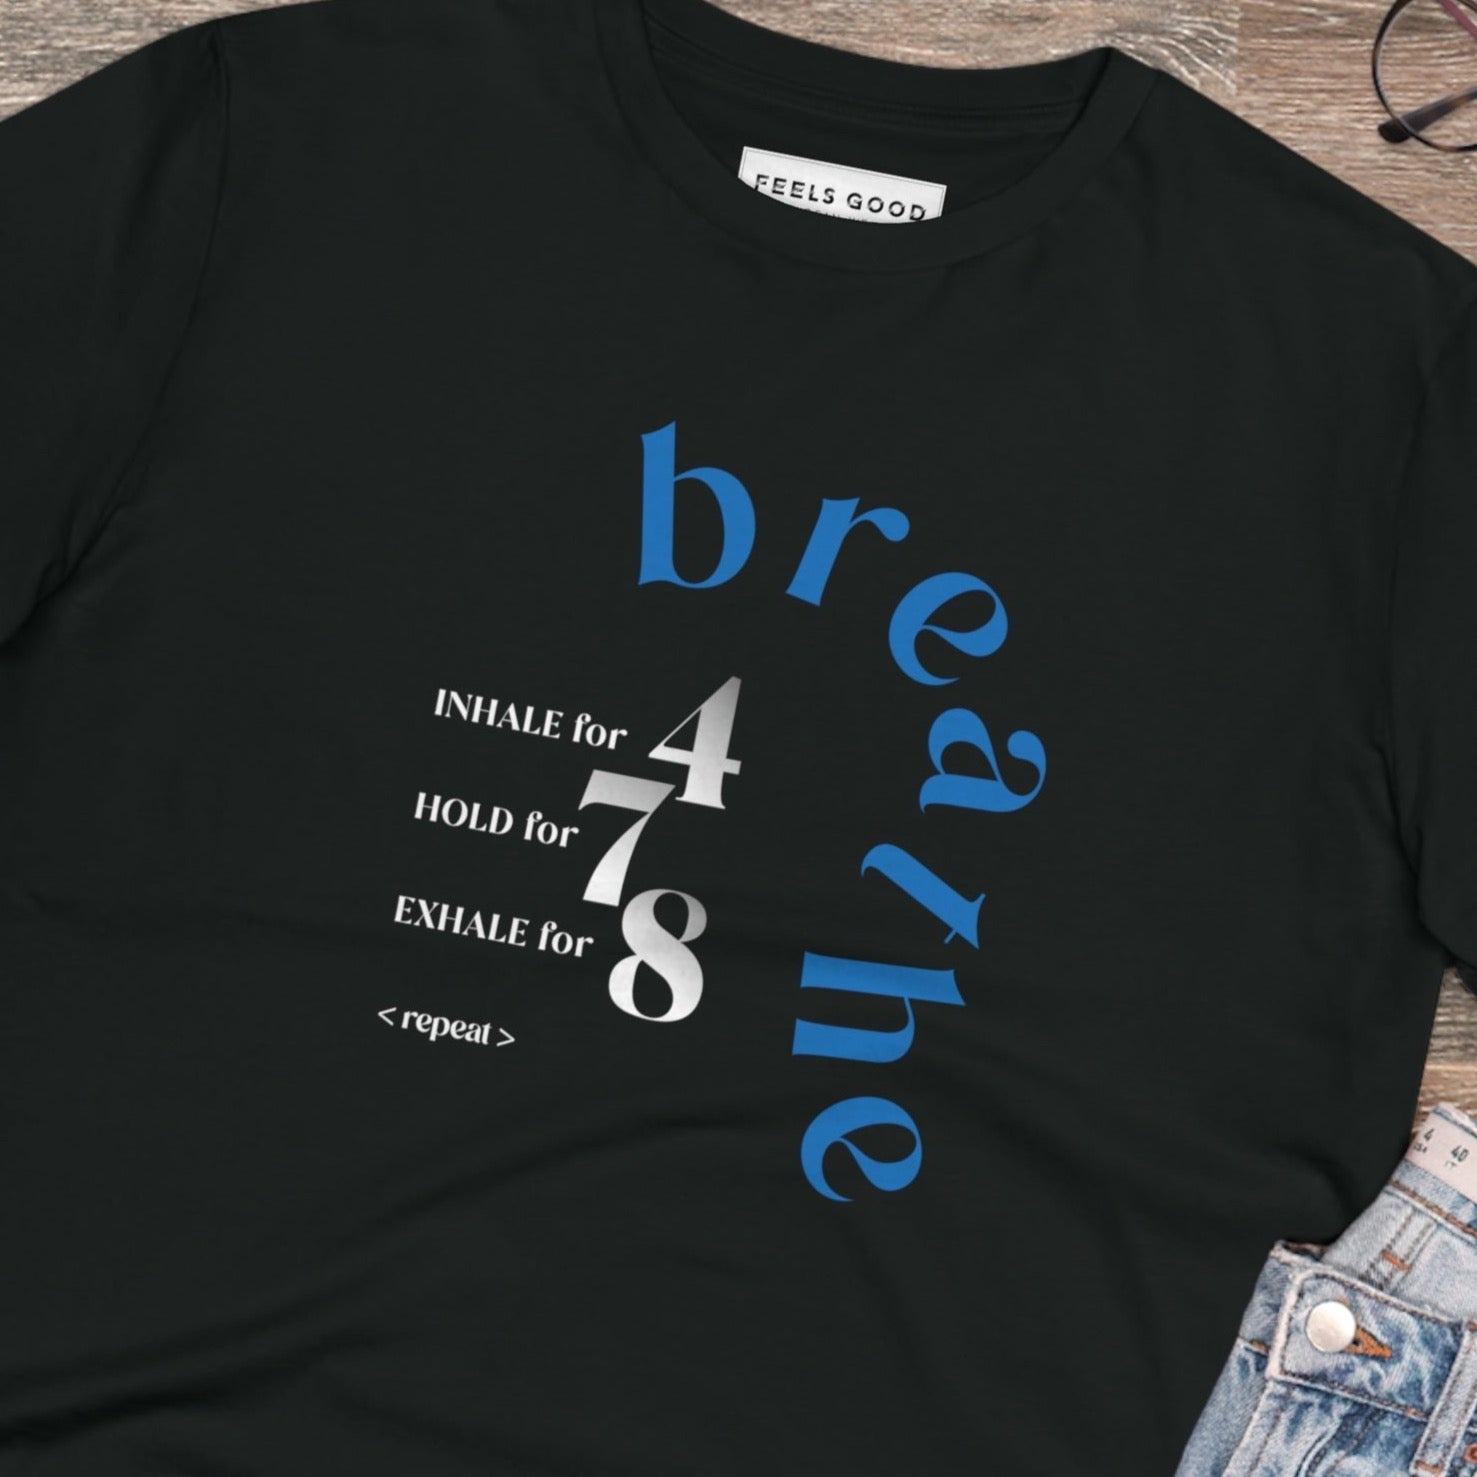 Meditation 'Breathe' Organic Cotton T-shirt - Eco Tshirt